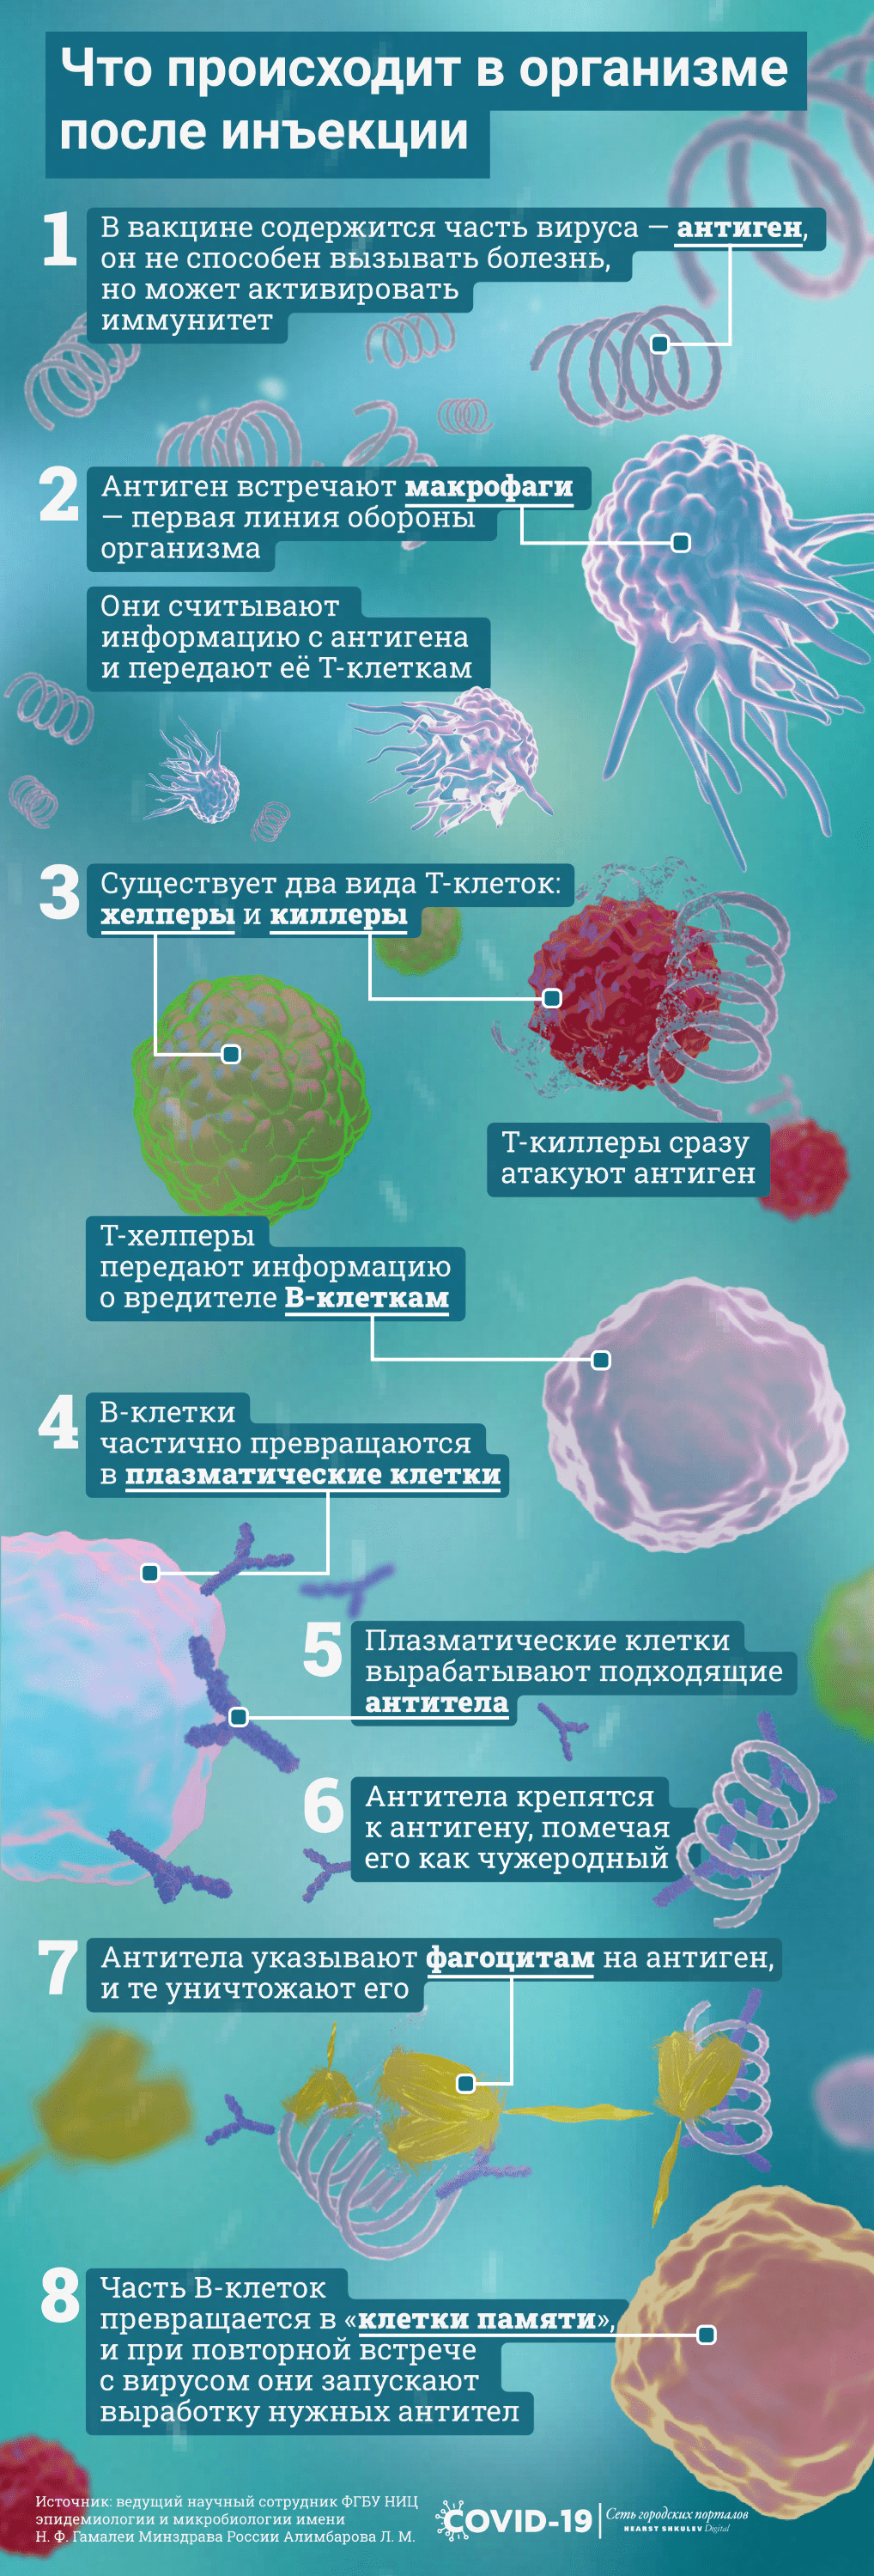 Организм вырабатывает иммунитет в несколько этапов